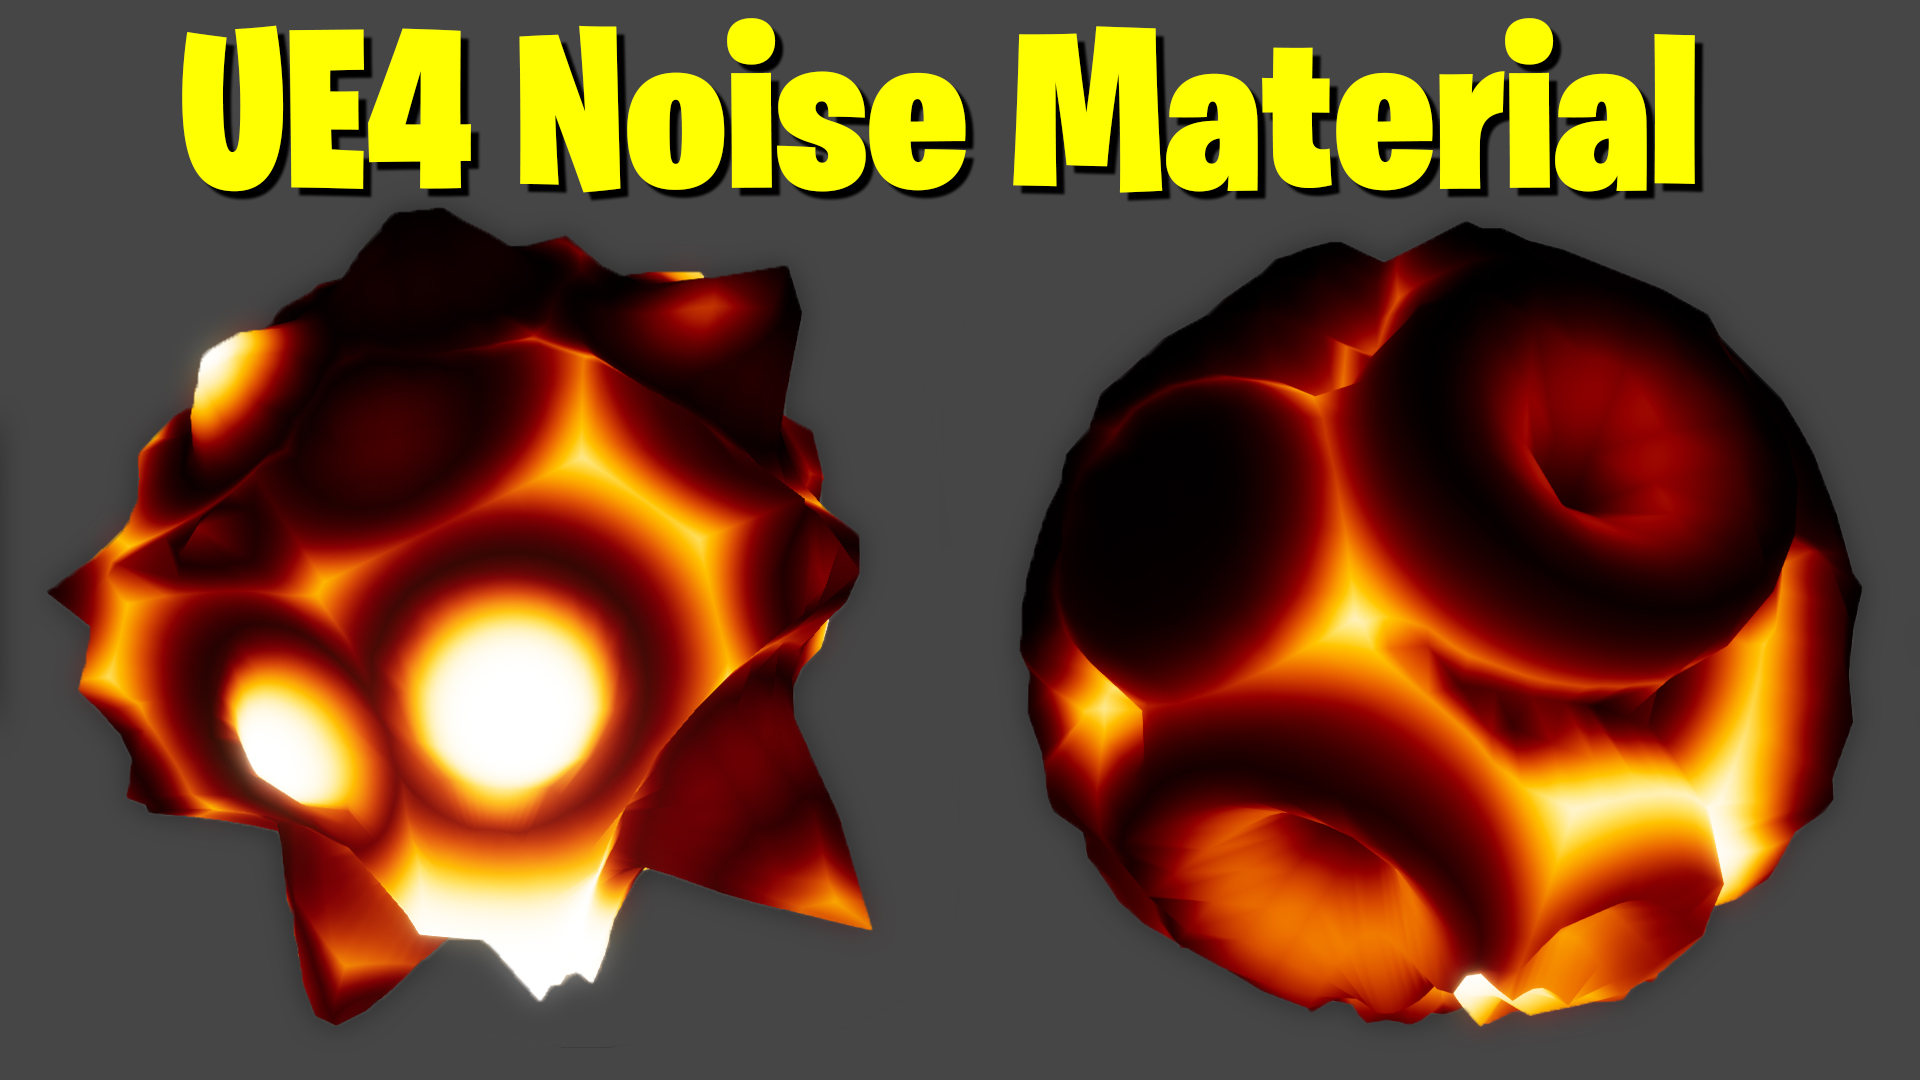 UE4 Noise Material Tutorial